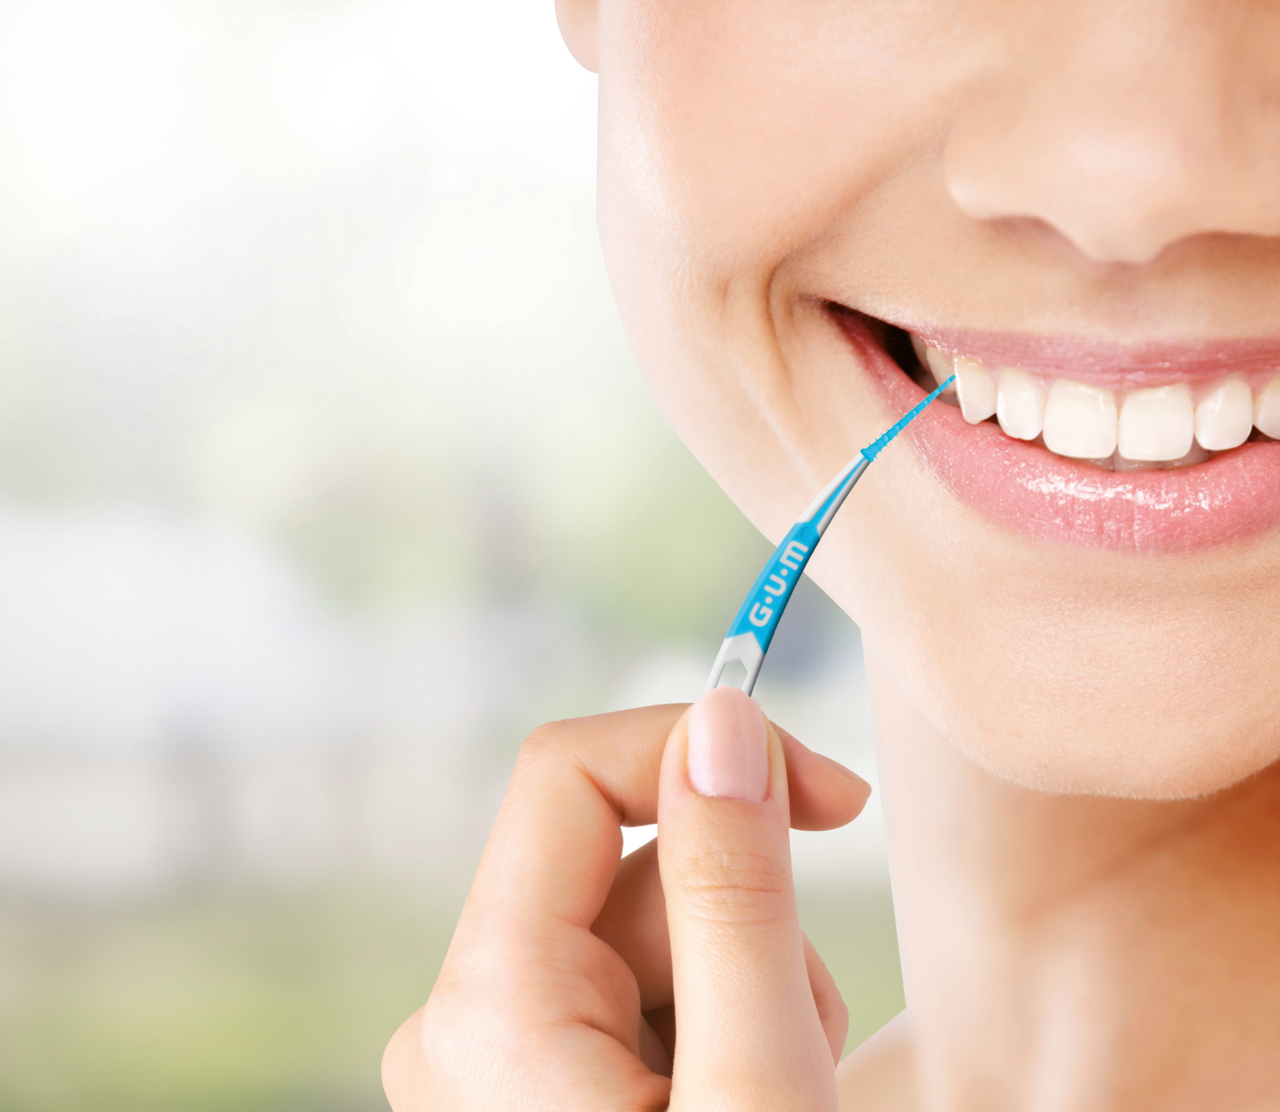 Aanbeveling van interdentale ragers of tandenstokers: Wat mondzorgprofessionals moeten weten